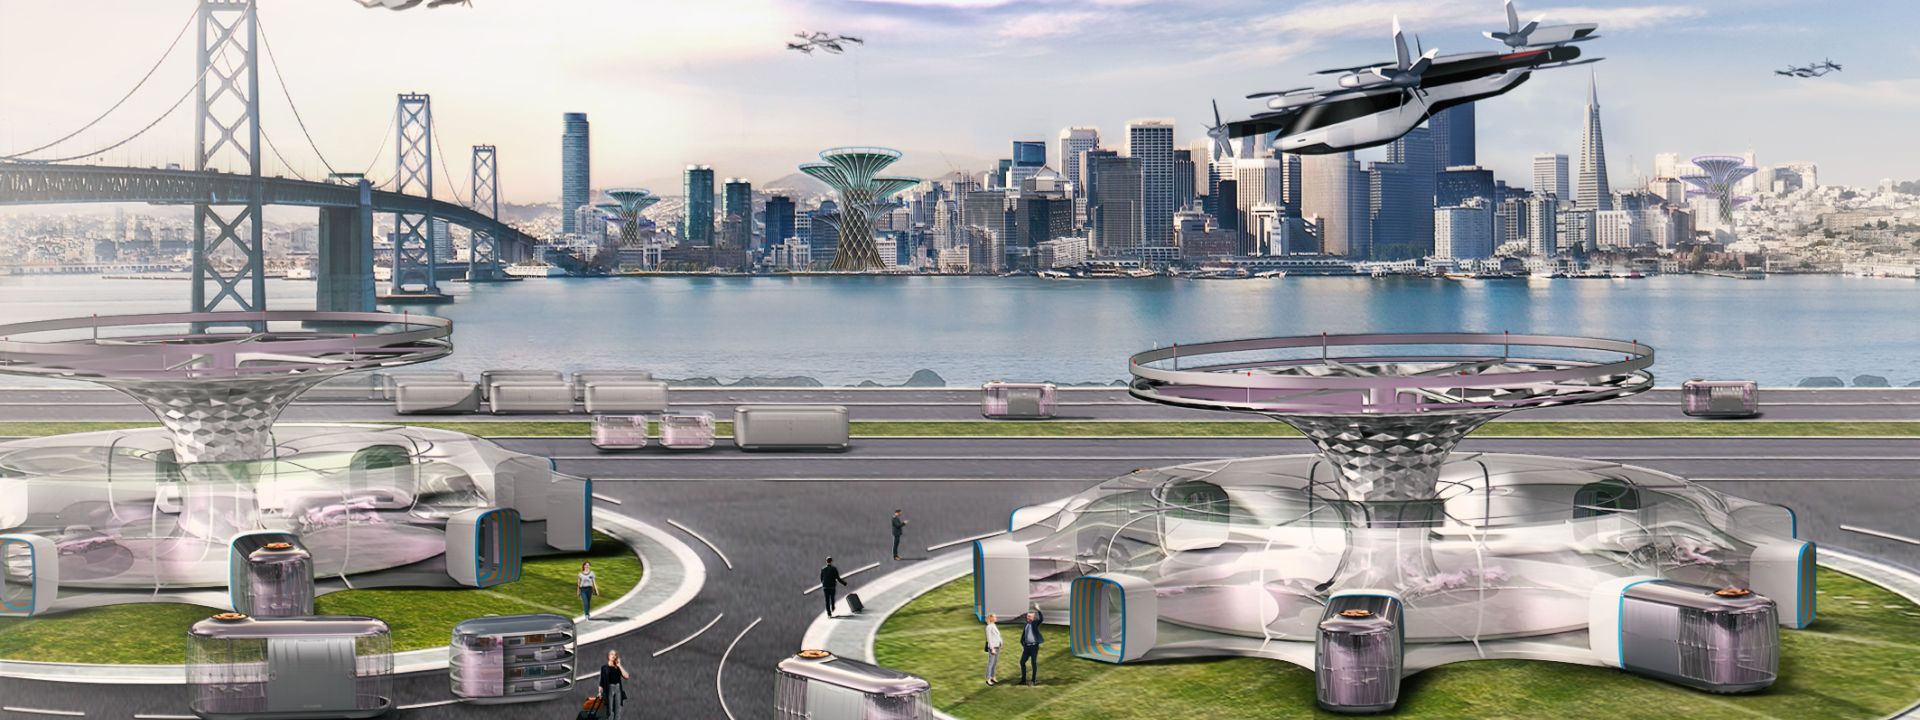 CES 2020 : Hyundai présente sa vision de la ville de demain